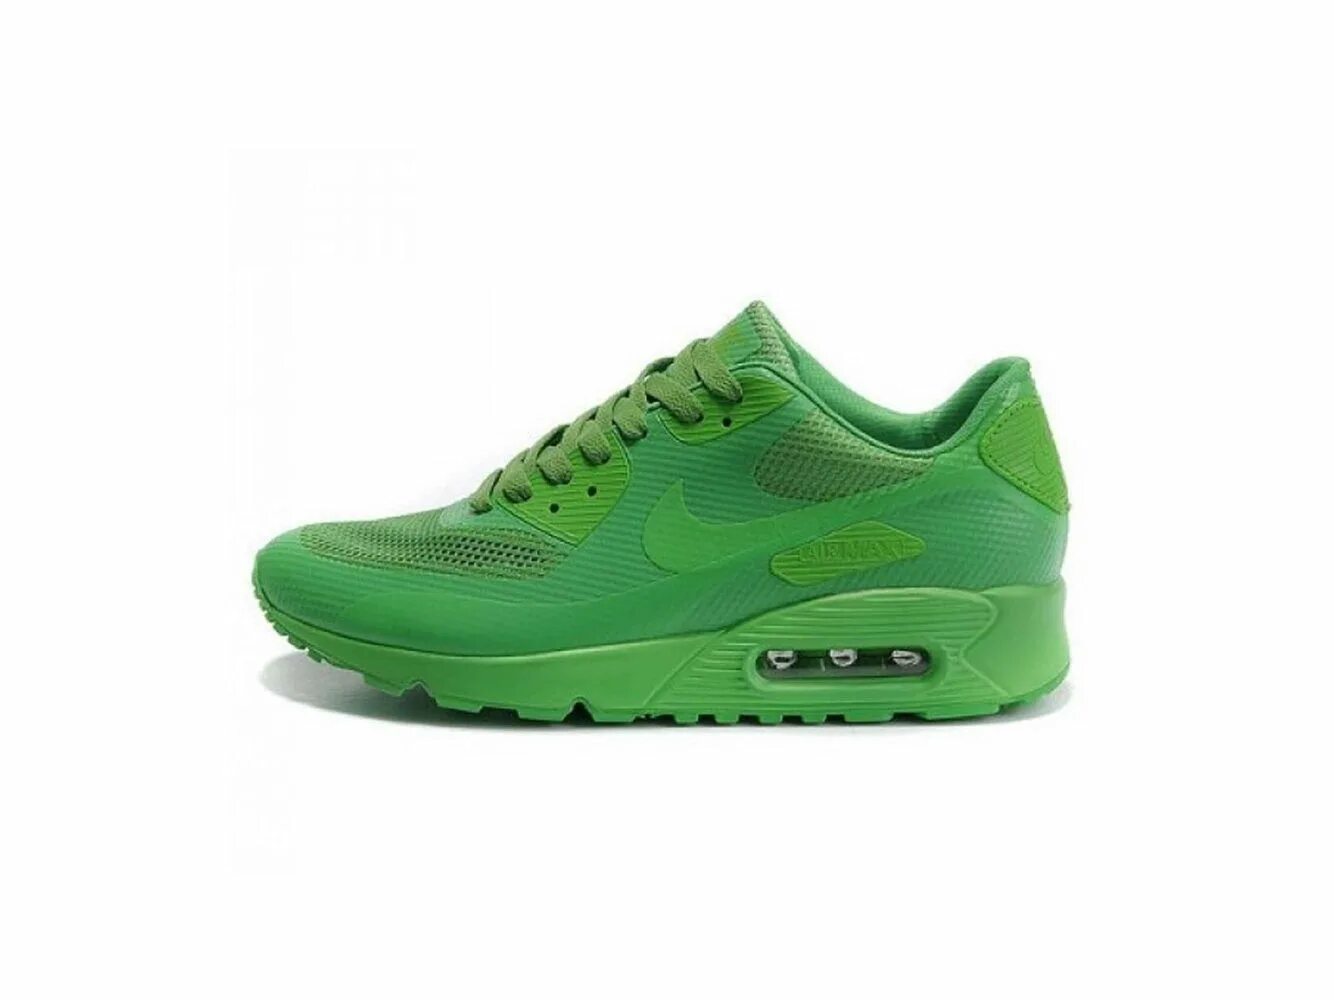 Зеленые кроссовки какие. Nike-Air-Max-90-Hyperfuse-2012-Green. Nike Air Max 90 Hyperfuse Green. Nike Air Max 90 Hyperfuse. Найк АИР Макс 90 зеленые.